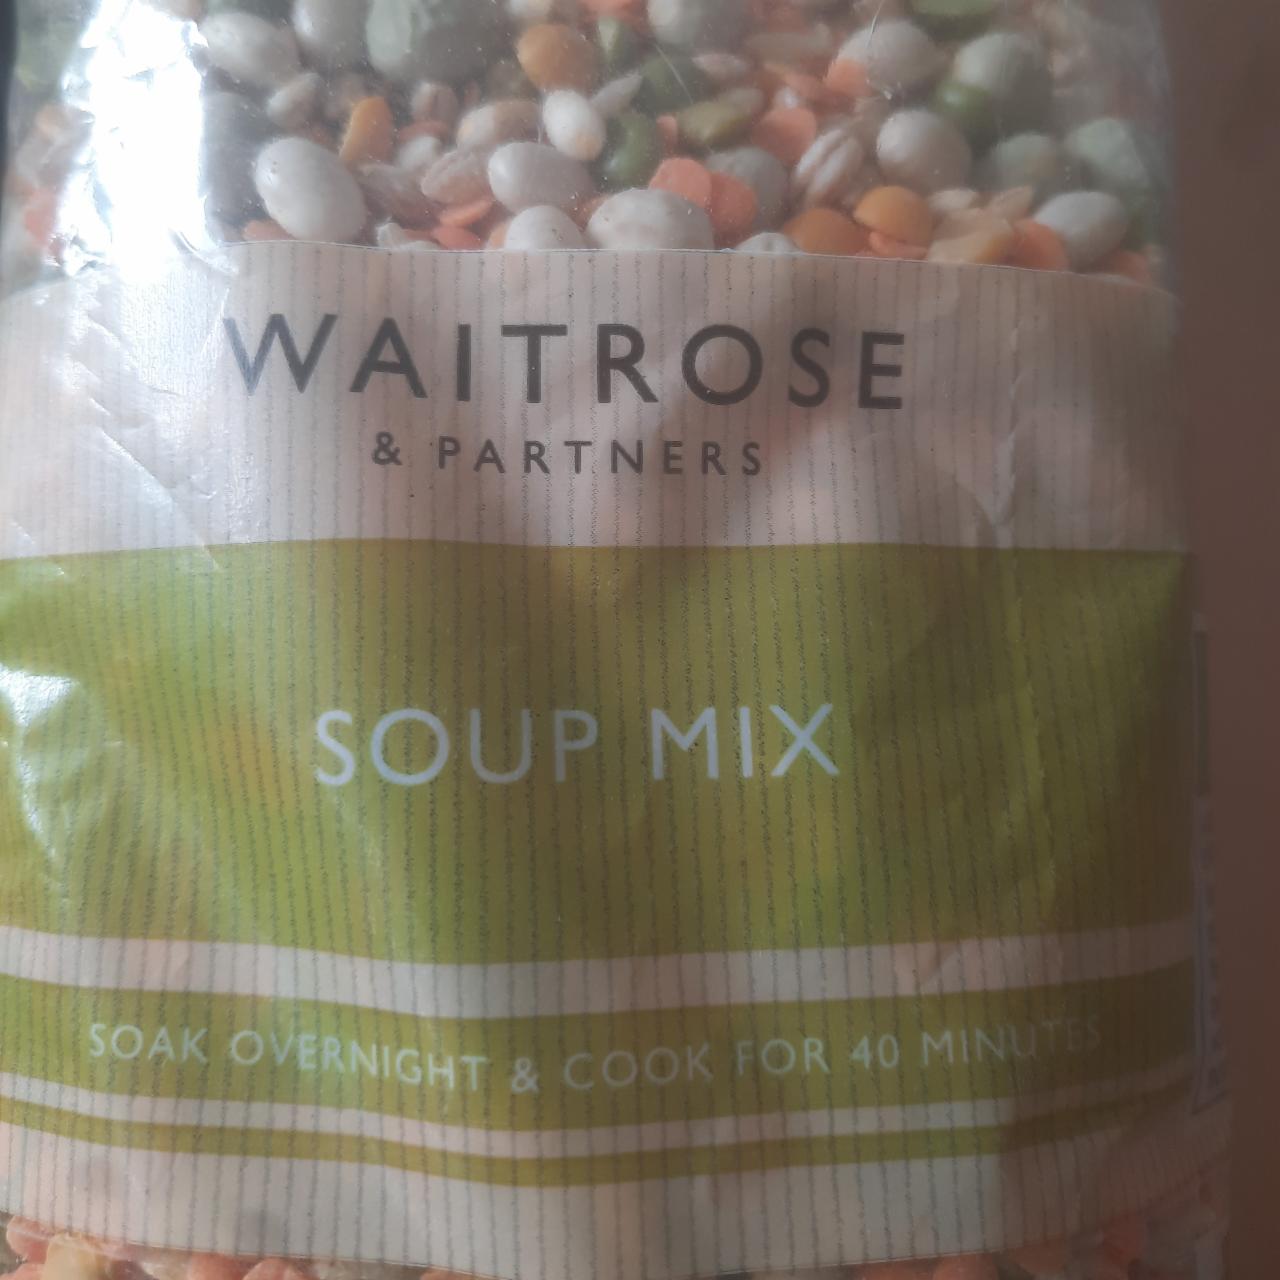 Фото - смесь для супа Soup mix Waitrose & partners